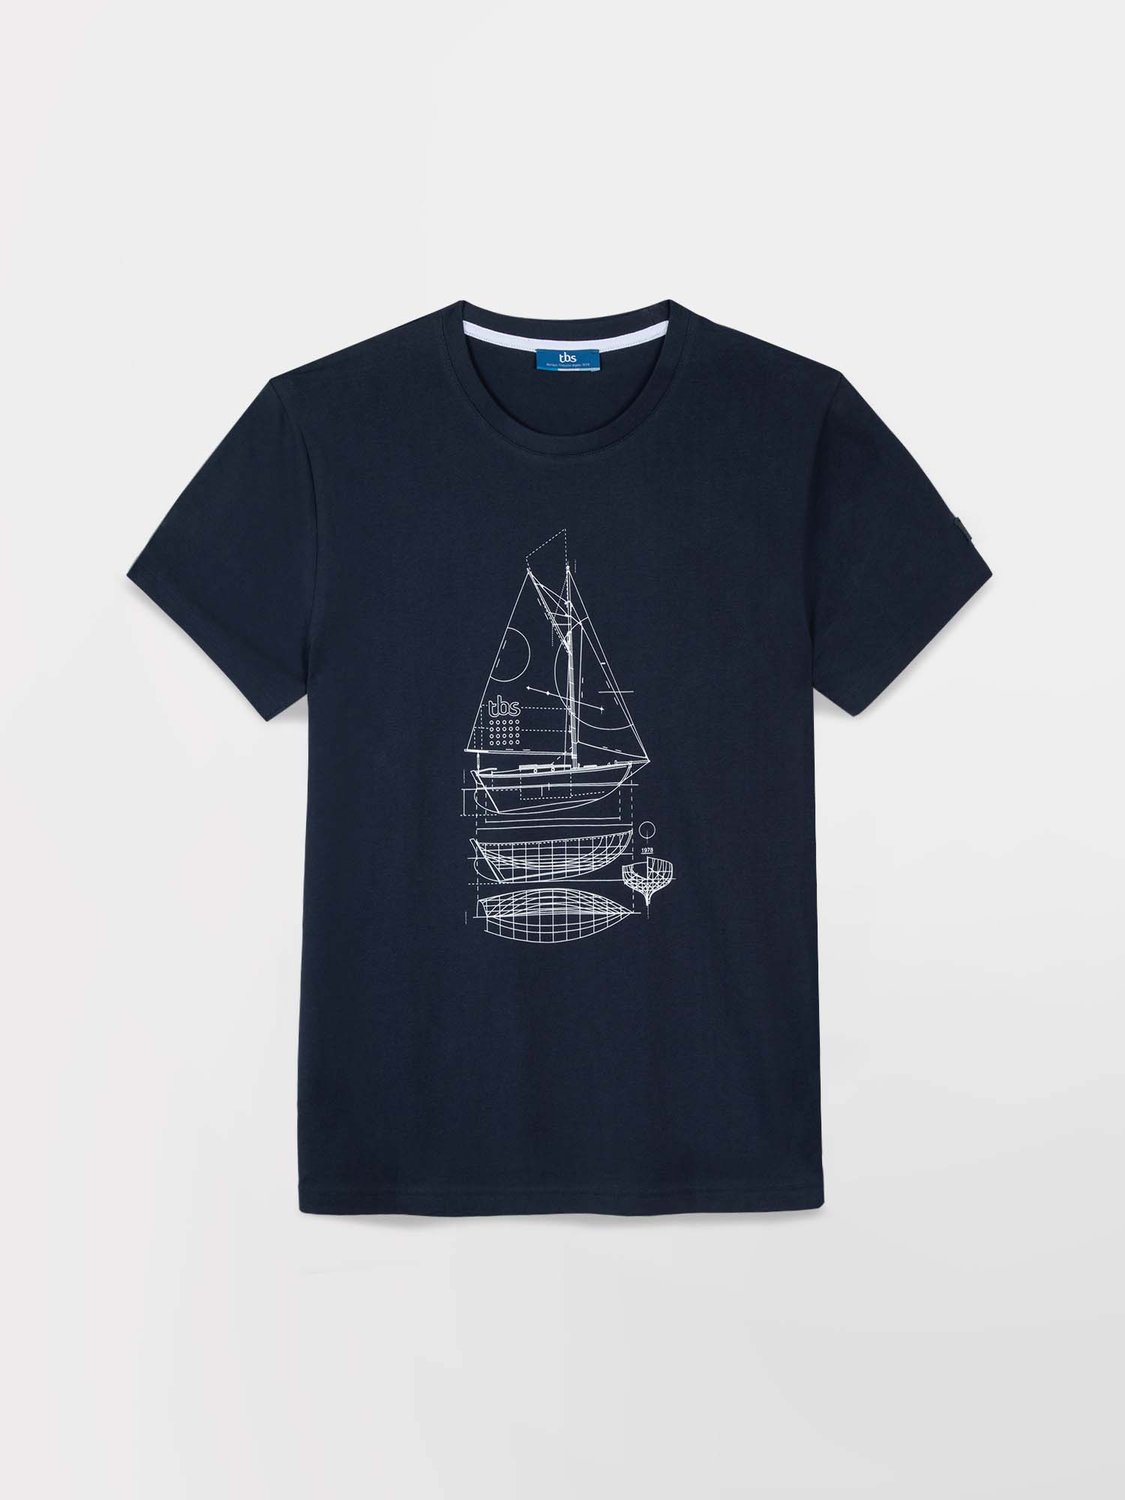 Tee Shirt Homme Print Bateau Coton Biologique Marine